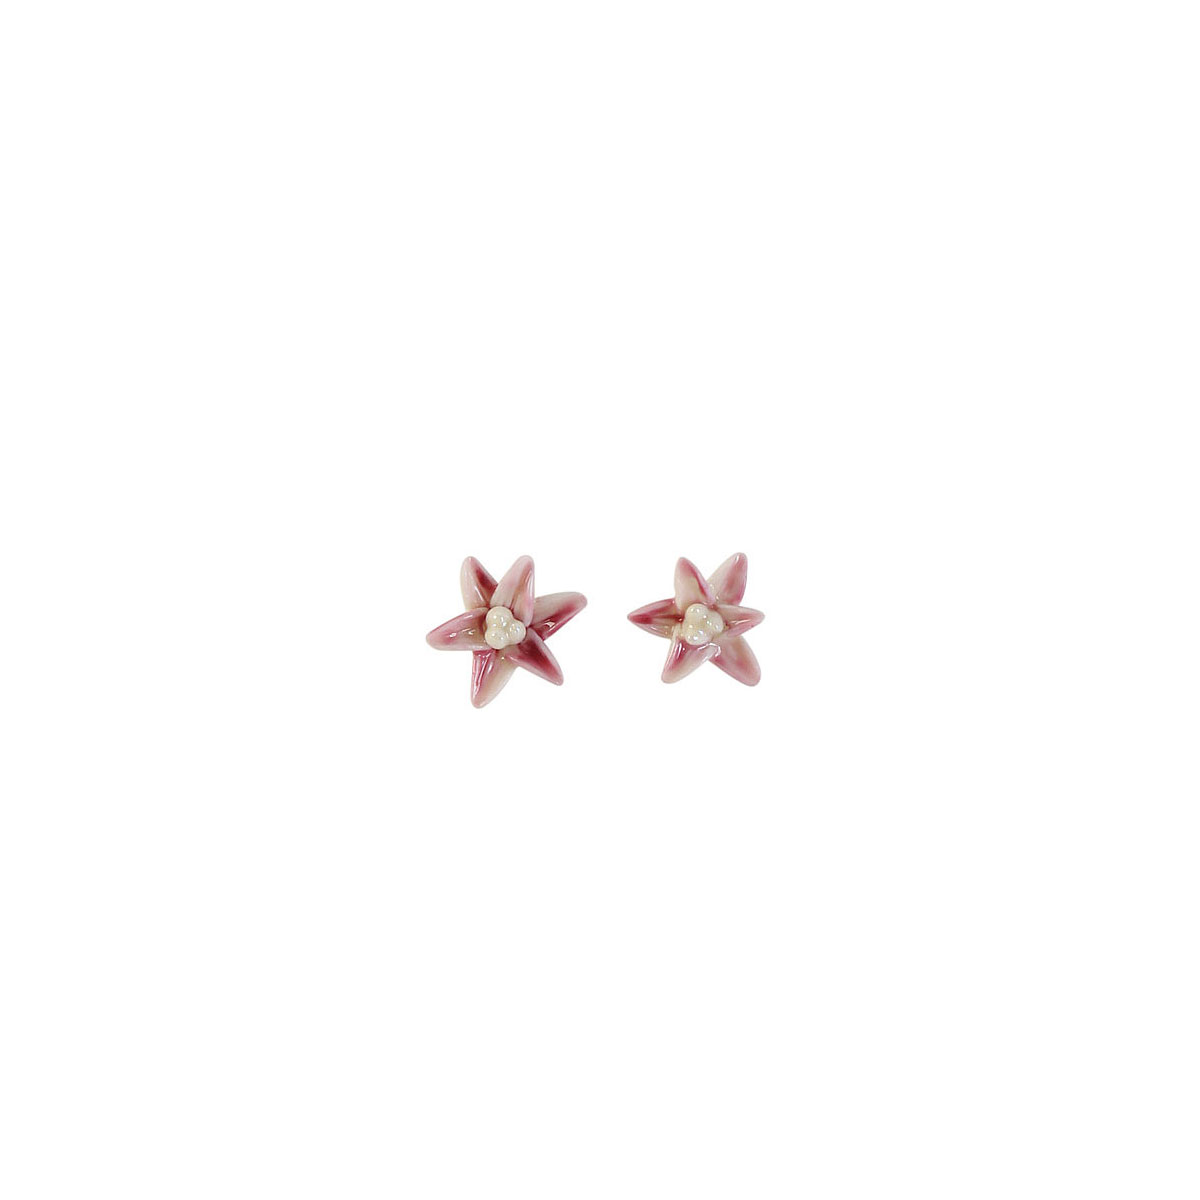 Belleek Porcelain Jewelry Freesia Earrings Pink, Pair